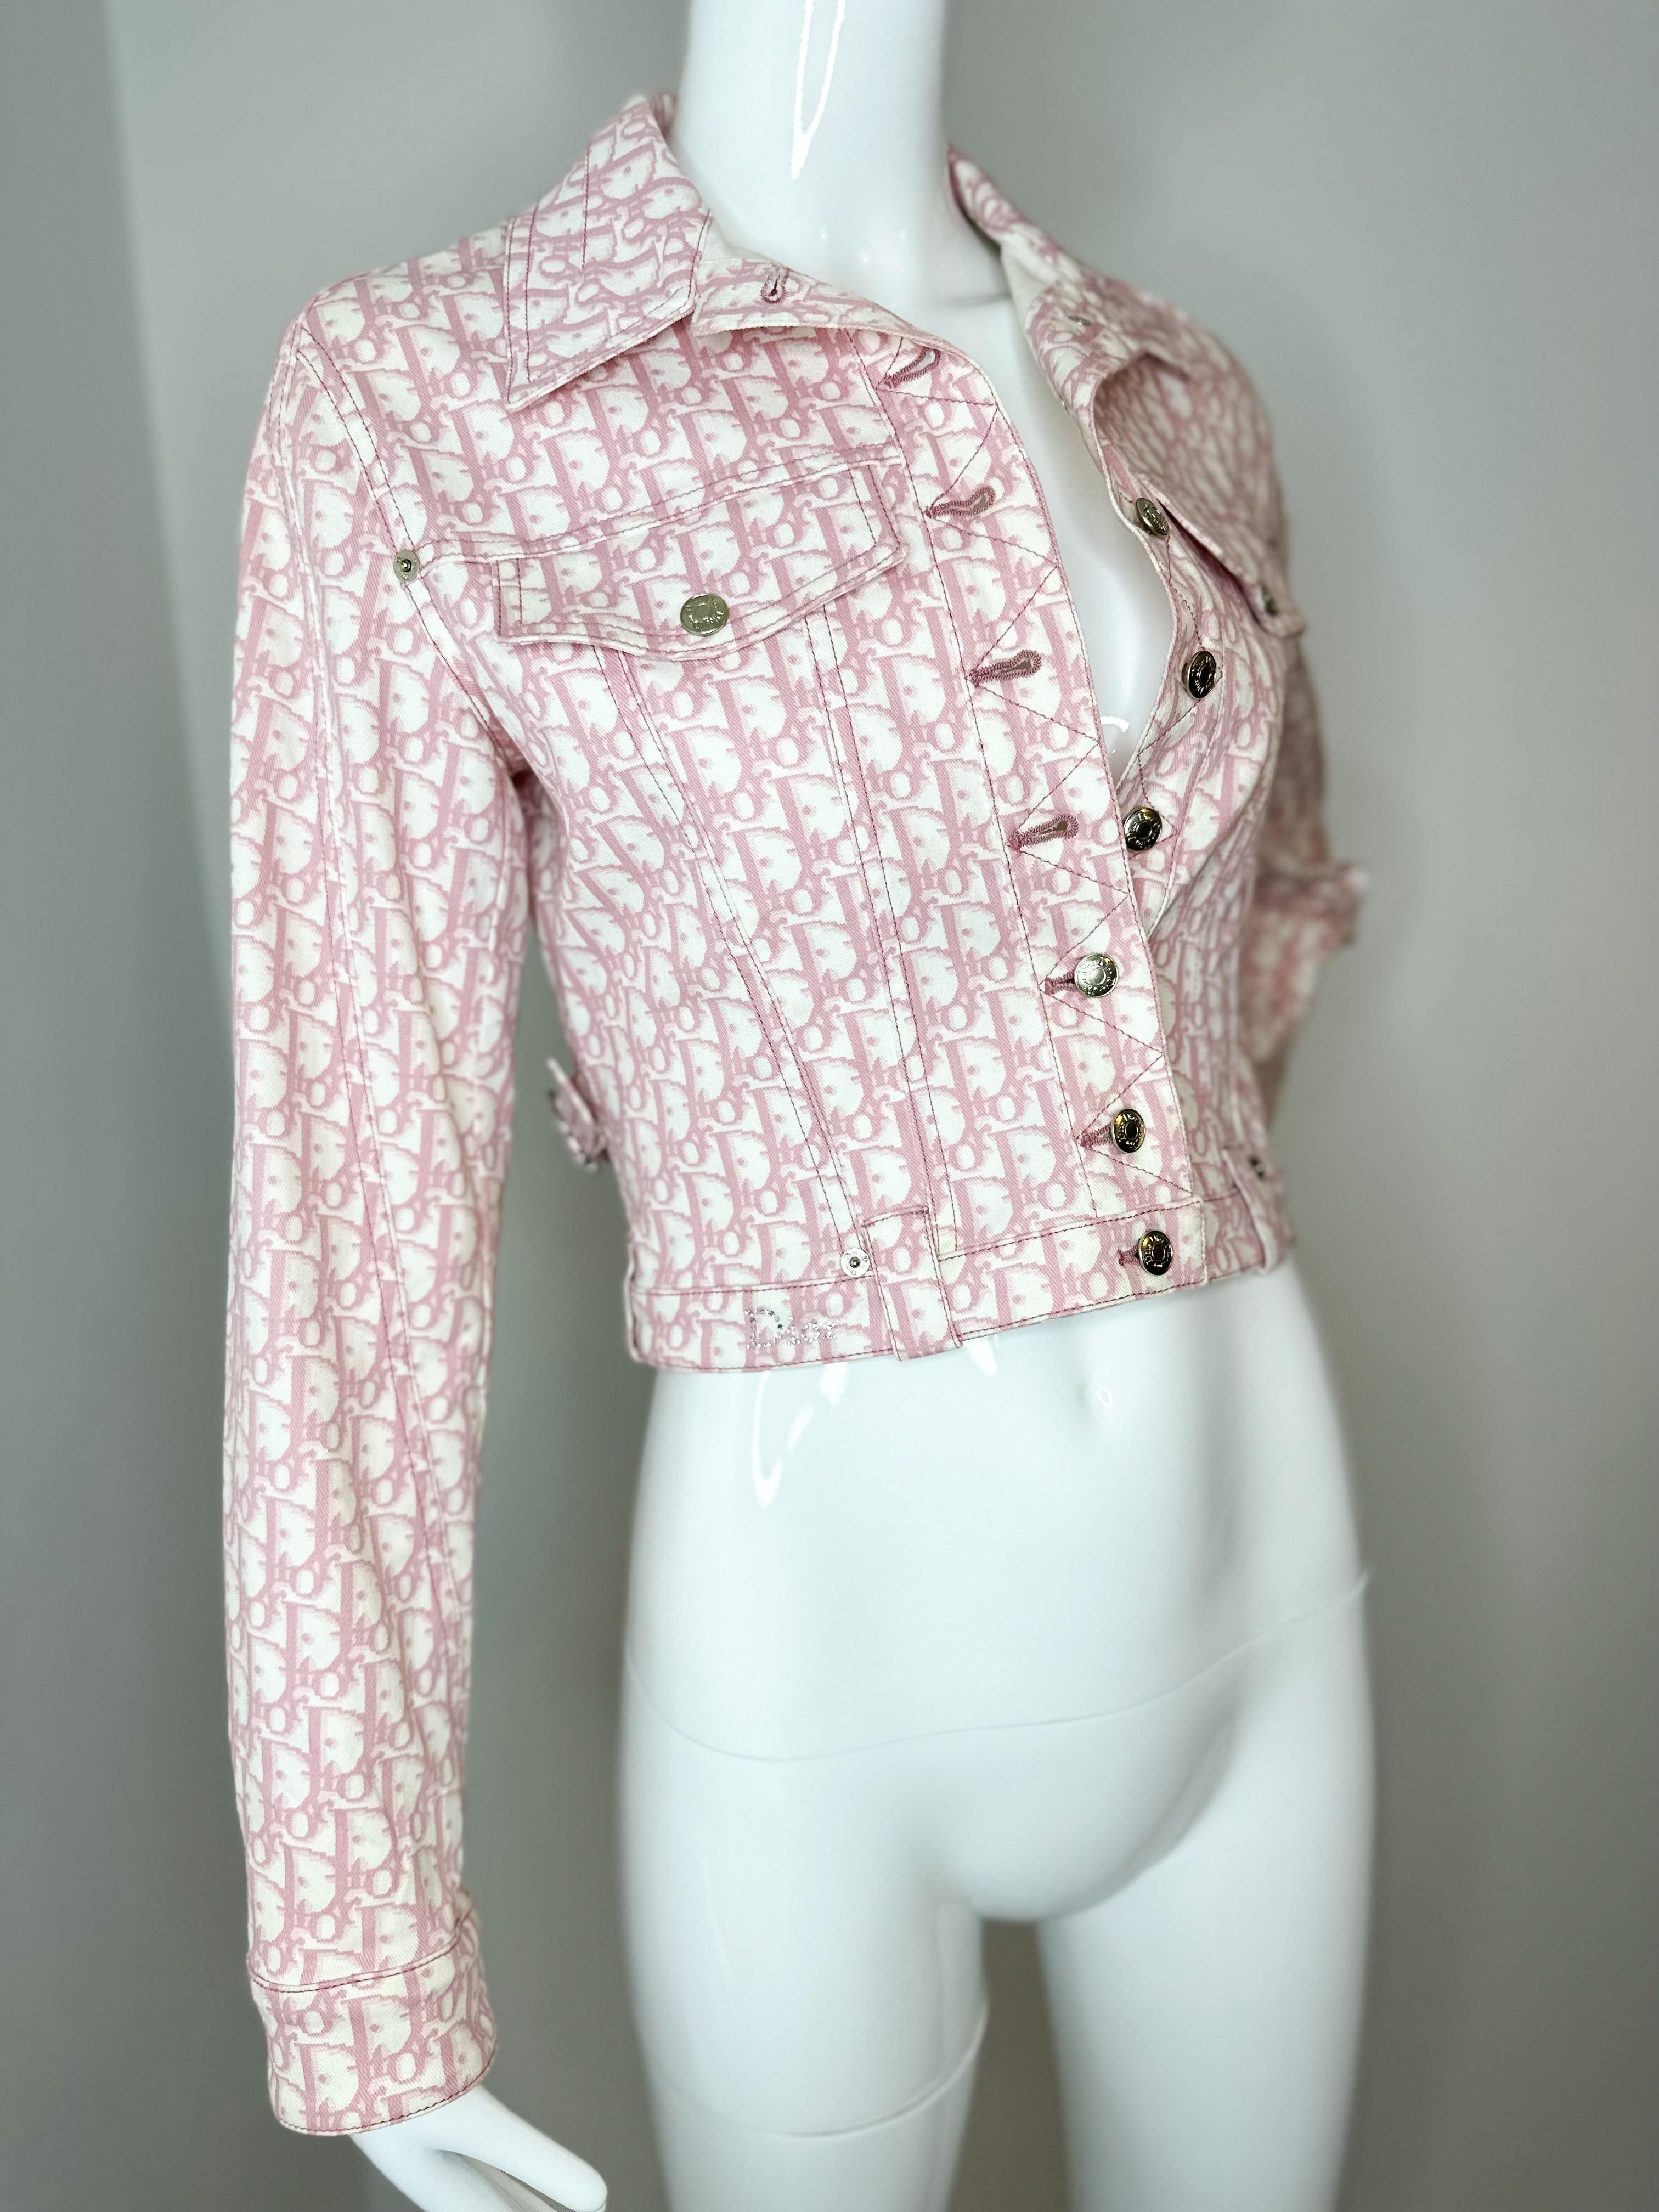 Christian Dior  by John Galliano 2004 Girly Collection S Veste avec monogramme rose et blanc  veste 

Taille Fr 36
US 4

Excellent état, pas de déchirures, de taches ou d'odeurs. Même s'il s'agit d'une pièce vintage, elle n'a été portée qu'une seule